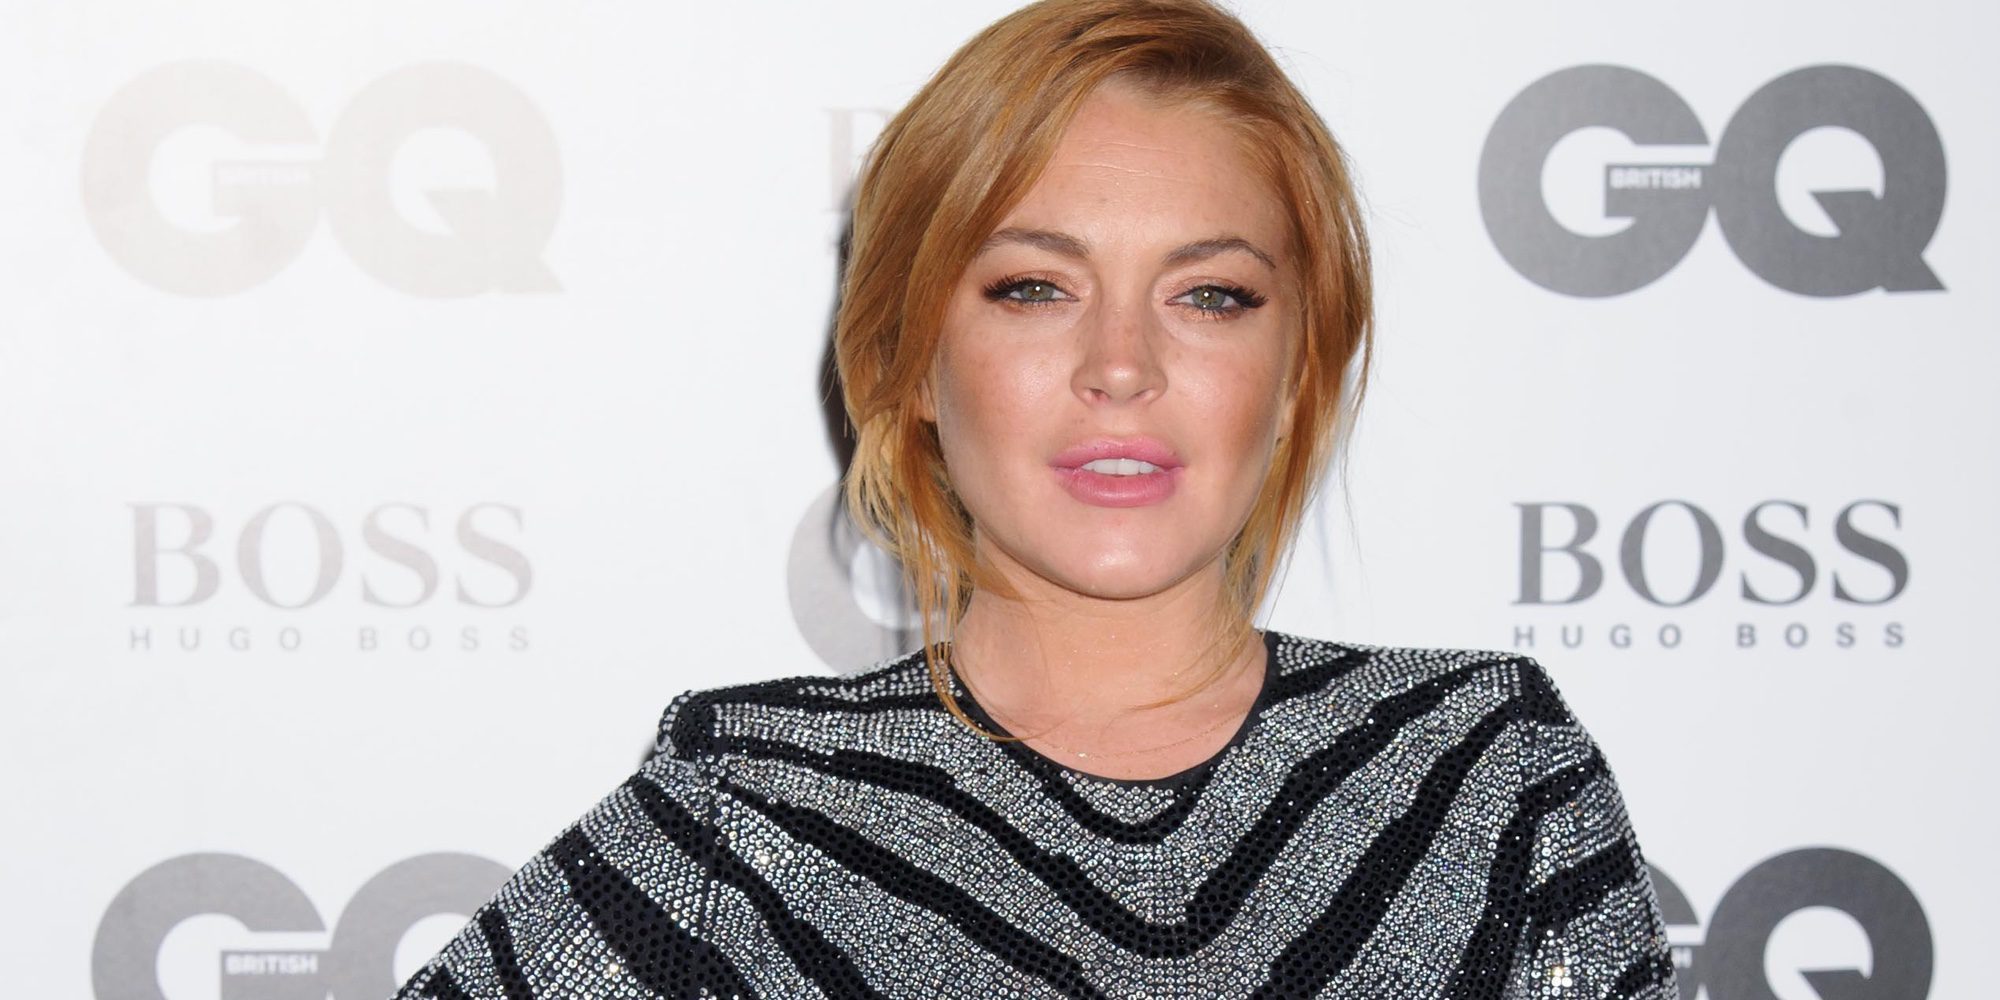 Lindsay Lohan pide privacidad envuelta en una polémica con su prometido Egor Tarabasov: "Es un asunto privado"